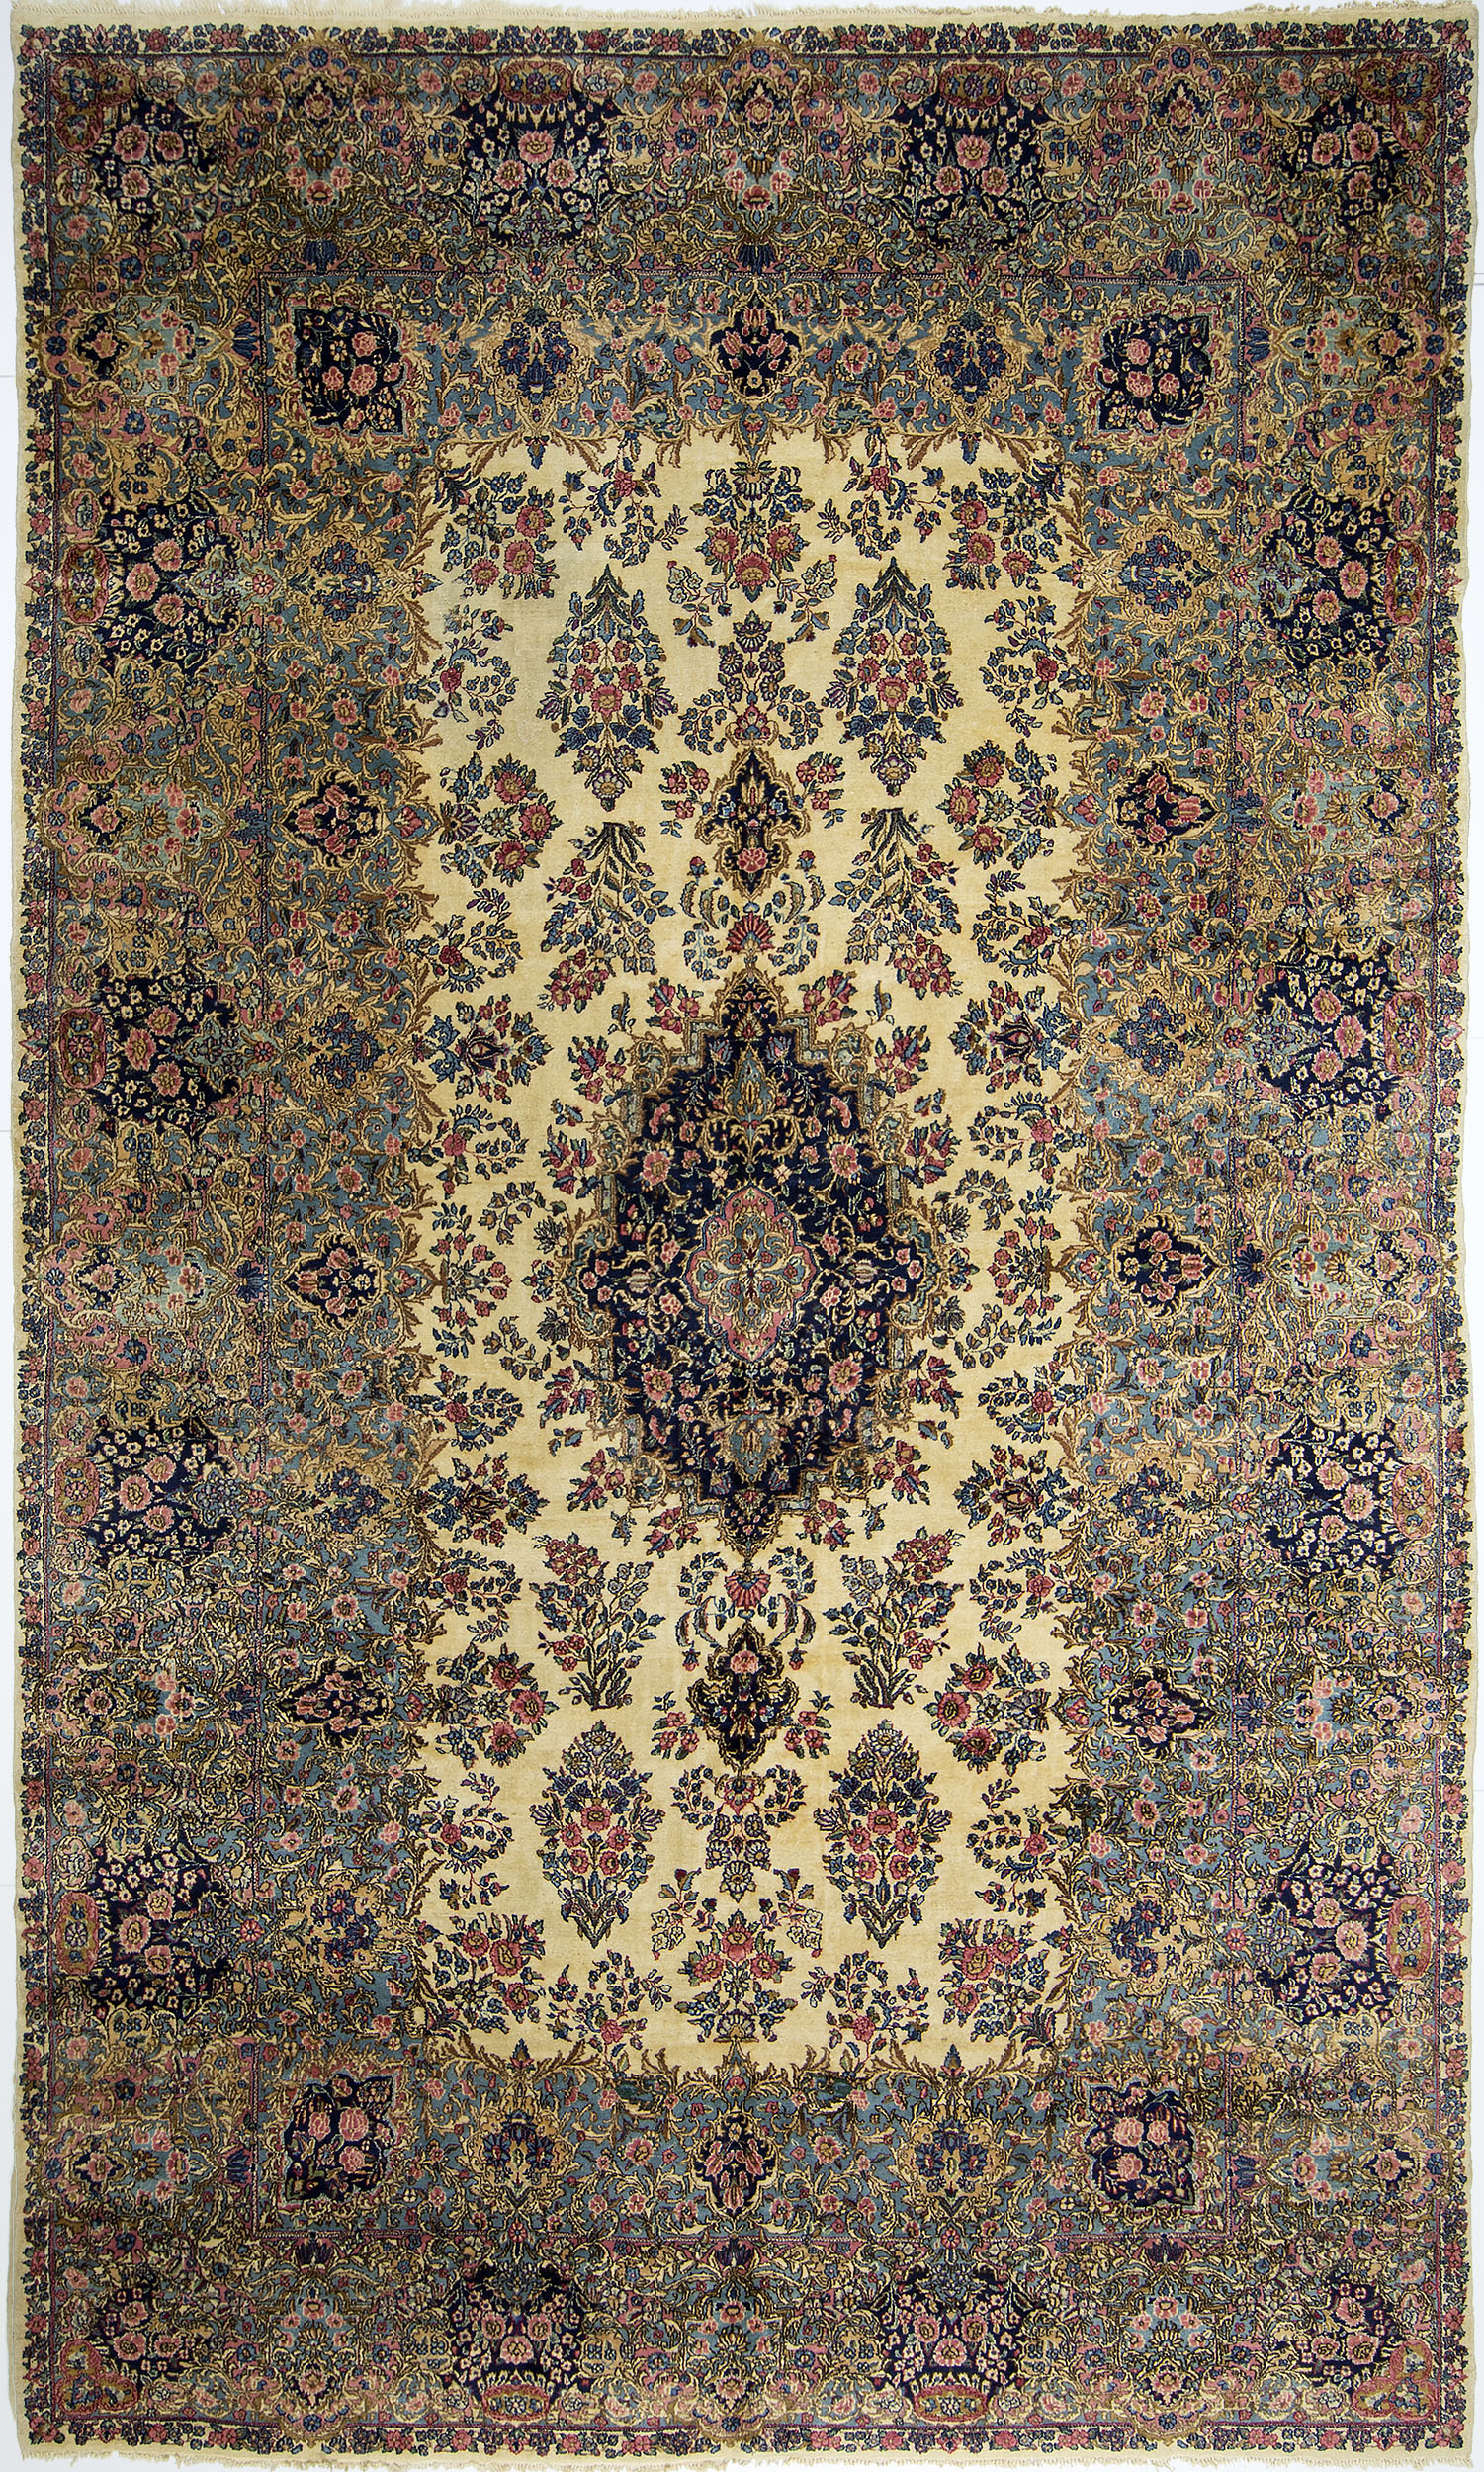 Kerman Carpet 16' 3" x 9' 8" 